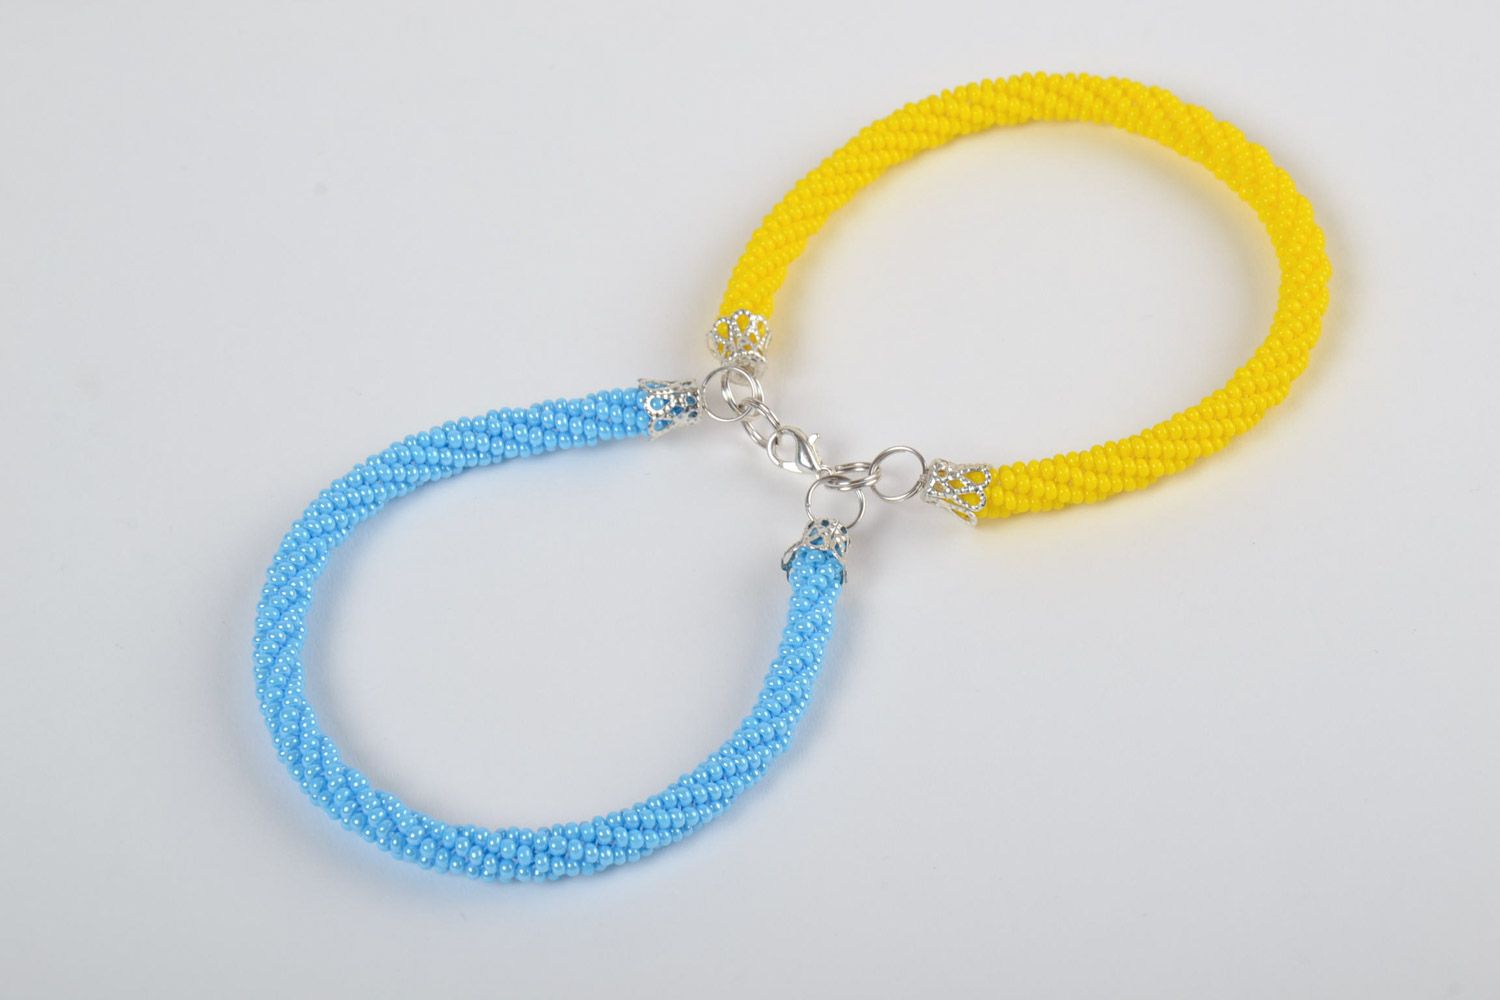 Двойной браслет из чешского бисера плетеный жгут ручной работы желтый с голубым фото 2